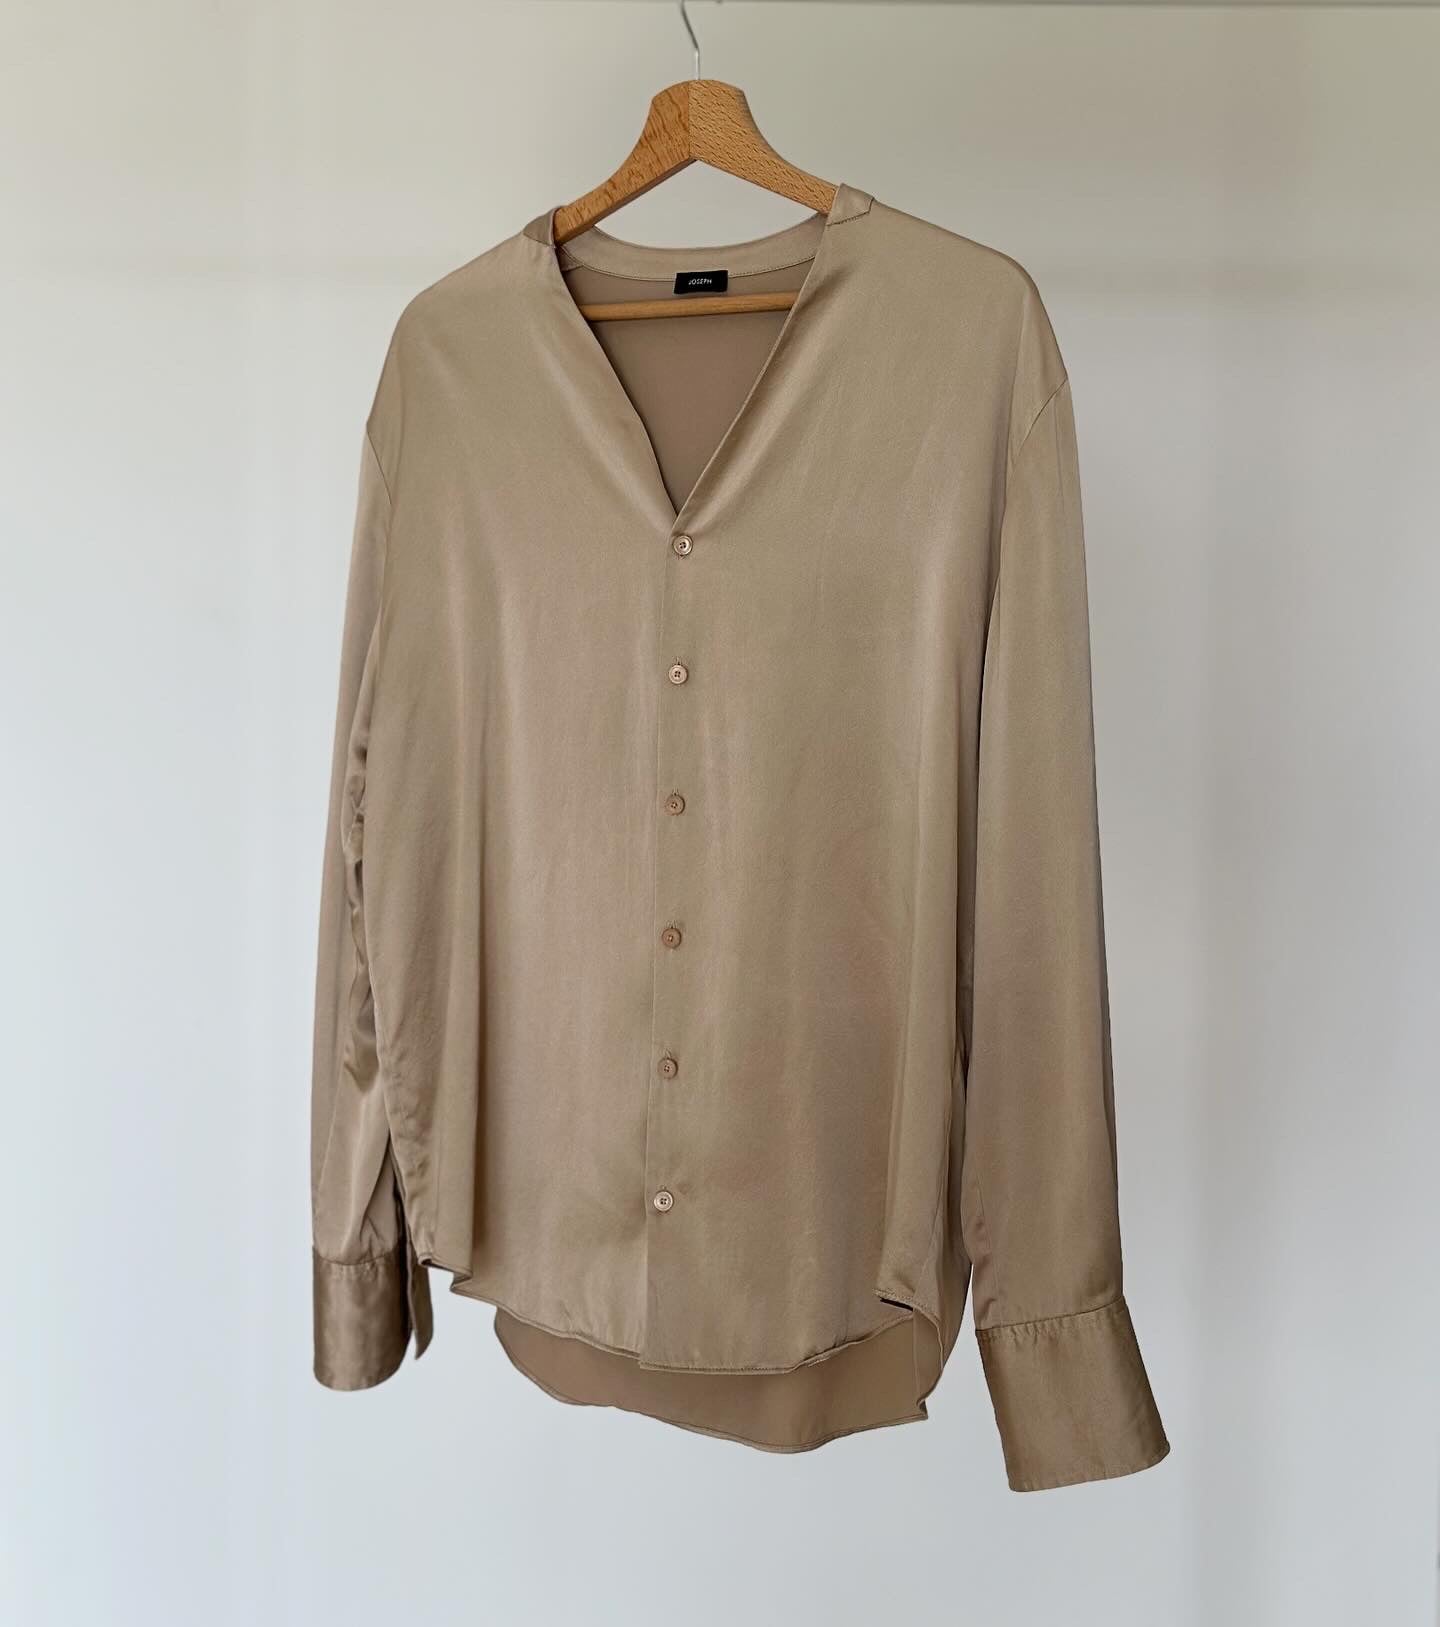 Incredible 100% silk satin blouse by Joseph